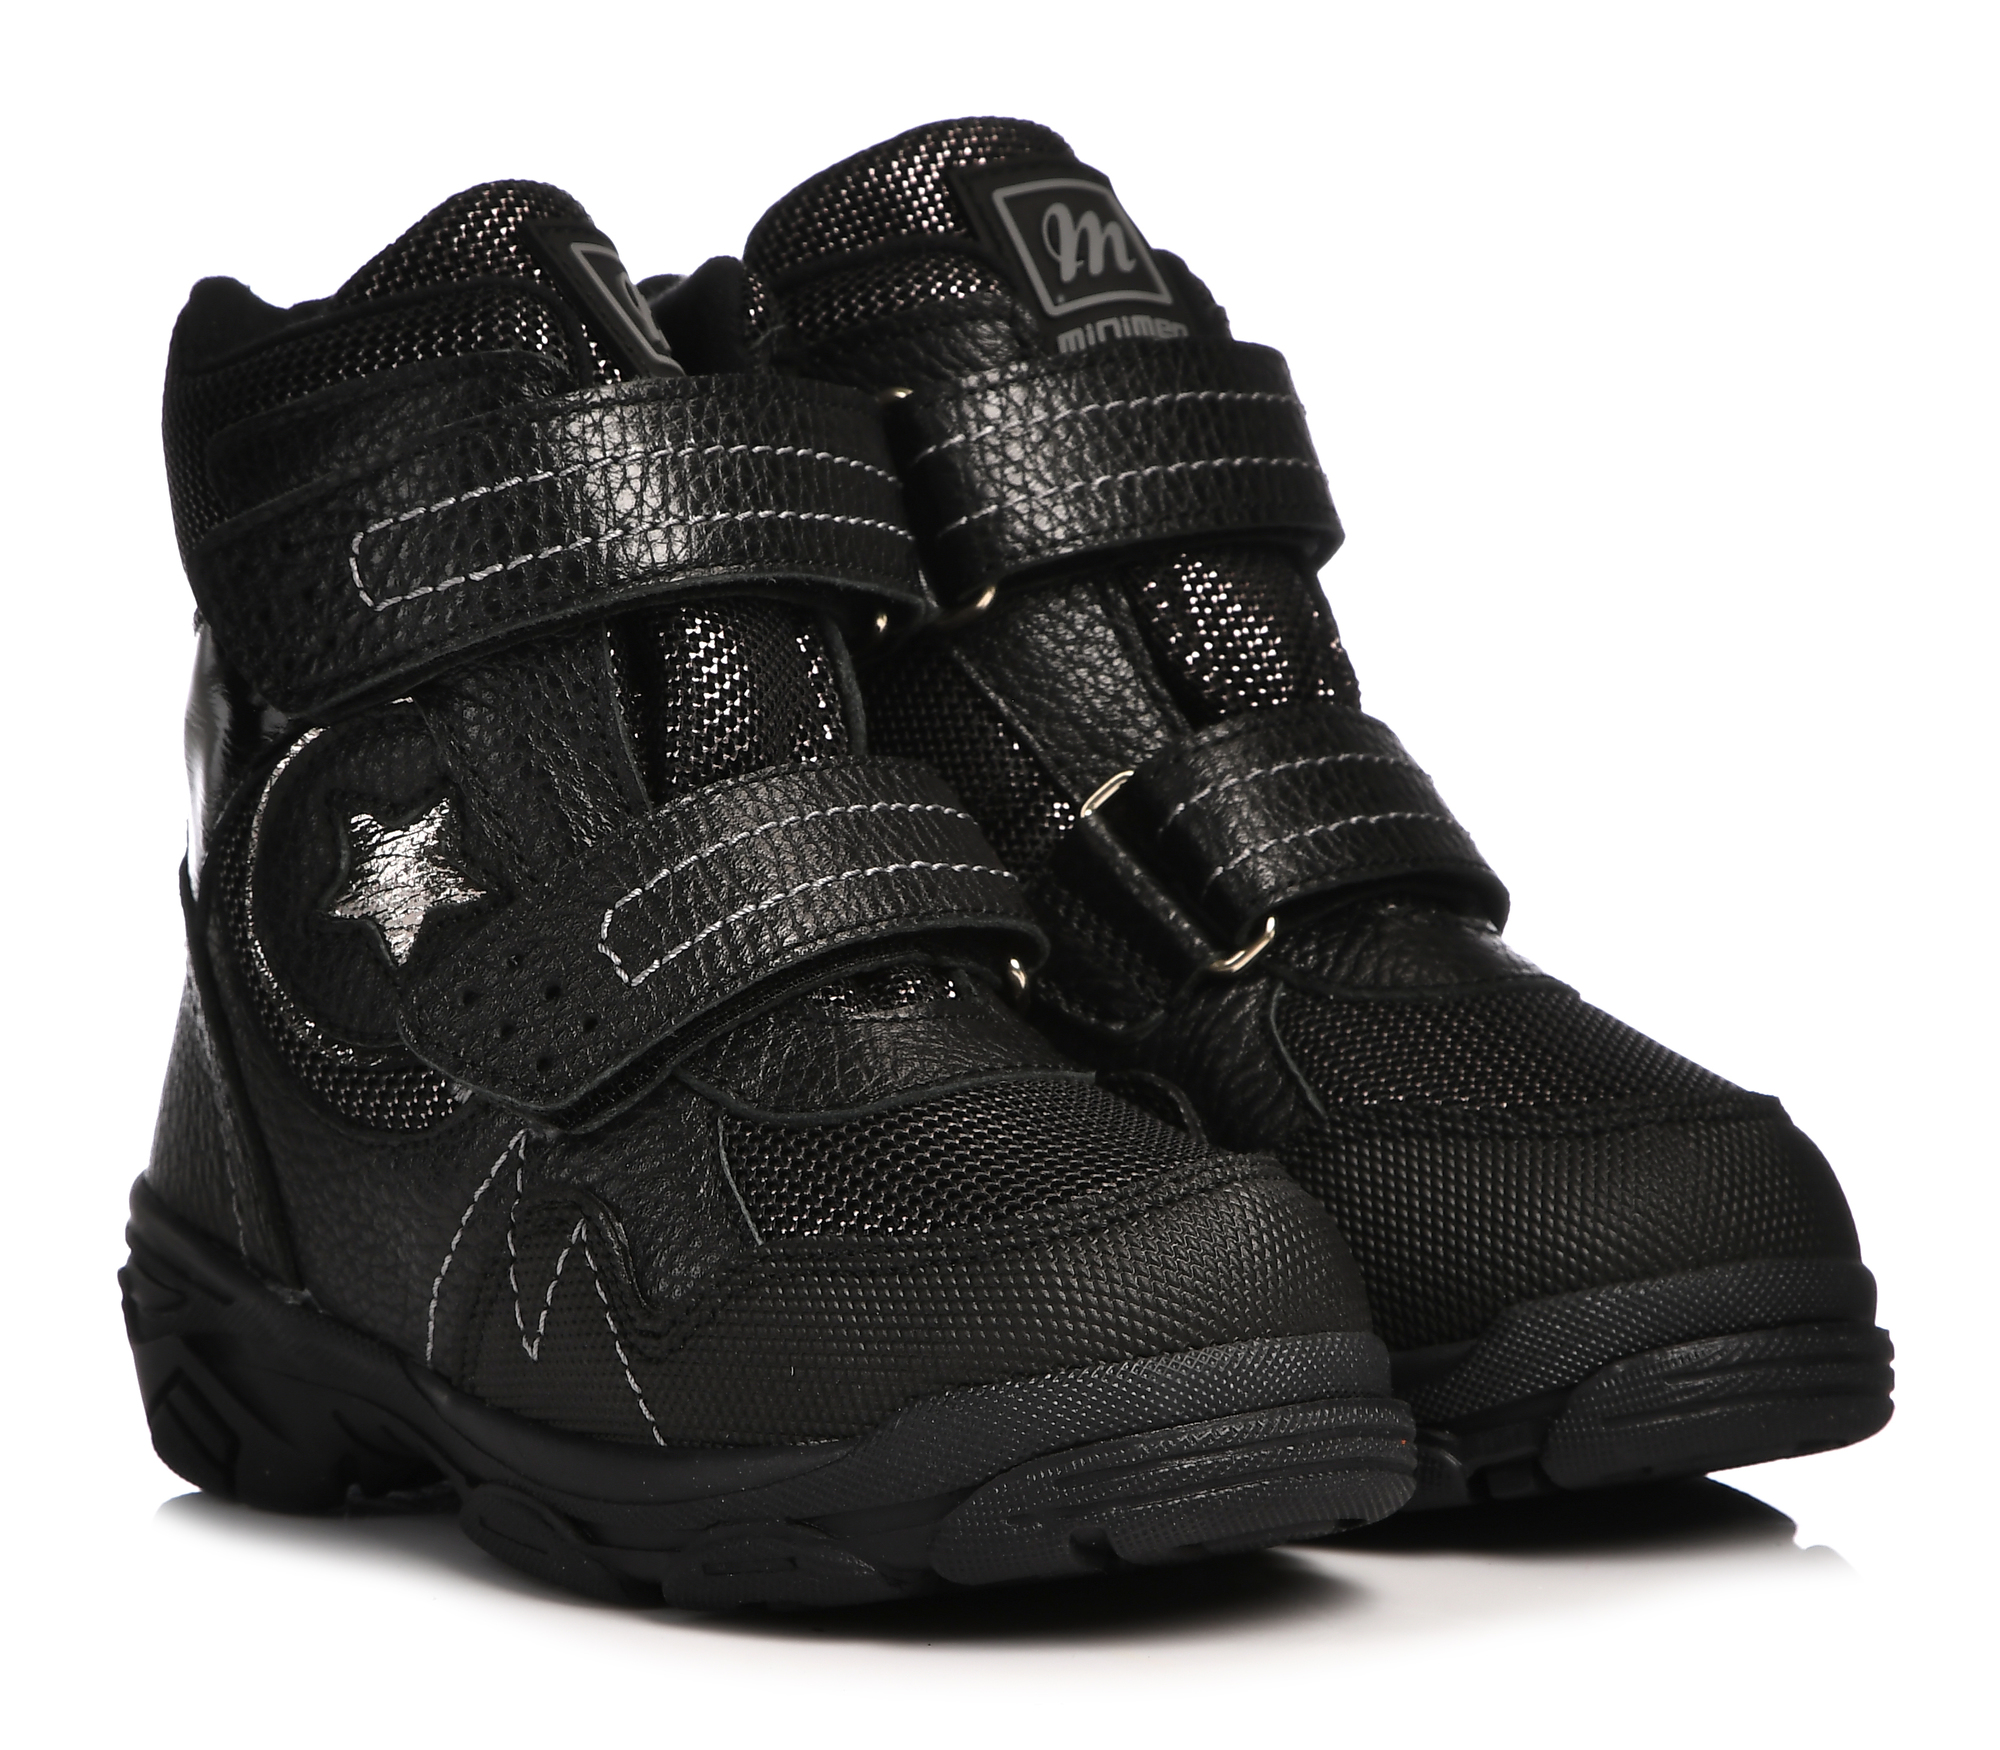 Ботинки Minimen для девочек, чёрные, размер 26, 2658-63-23B-05 ботинки minimen для девочек сиреневые размер 29 2658 63 23b 04